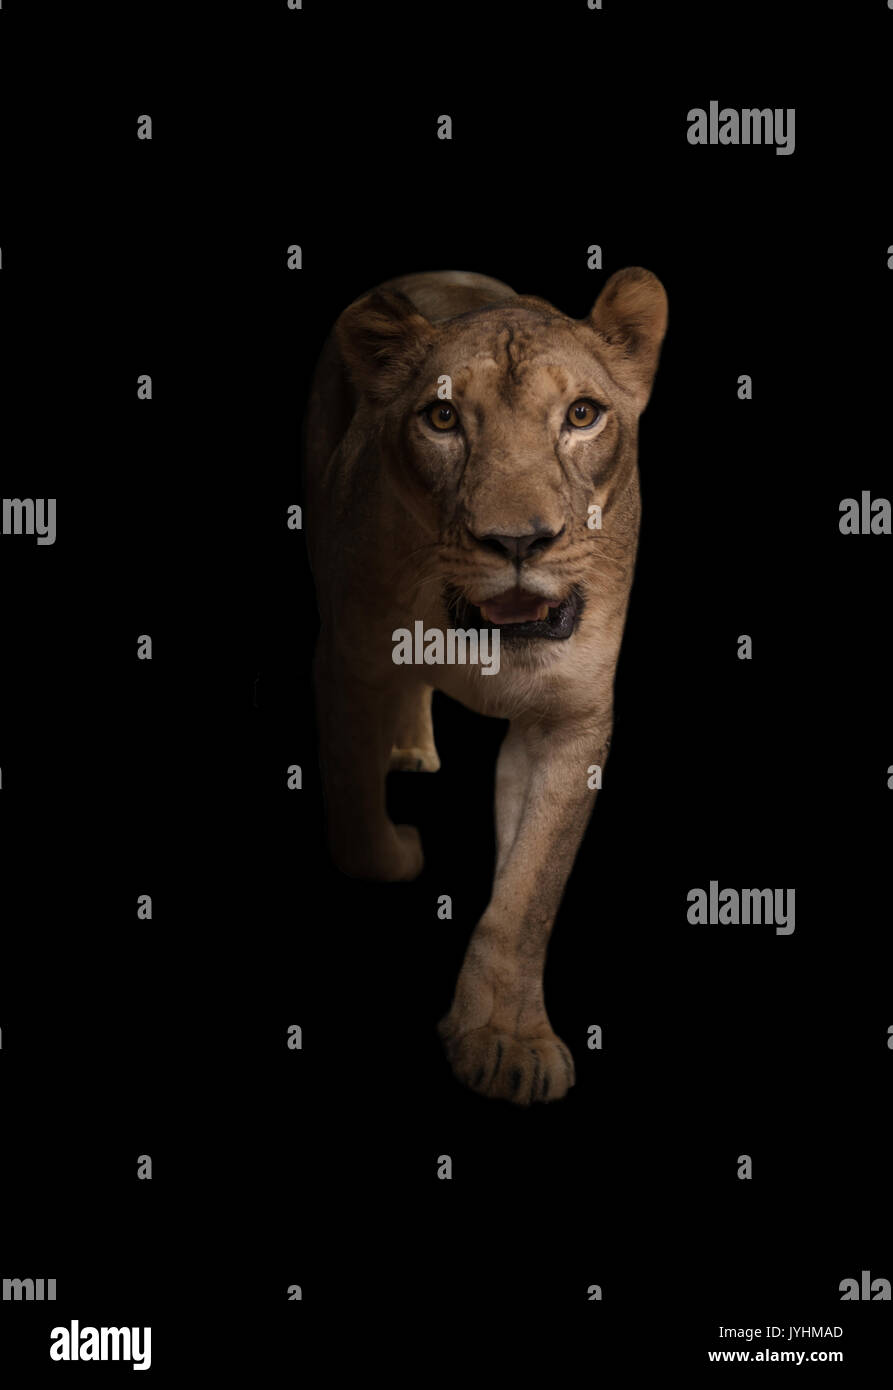 Femme lion africain dans le fond sombre Banque D'Images